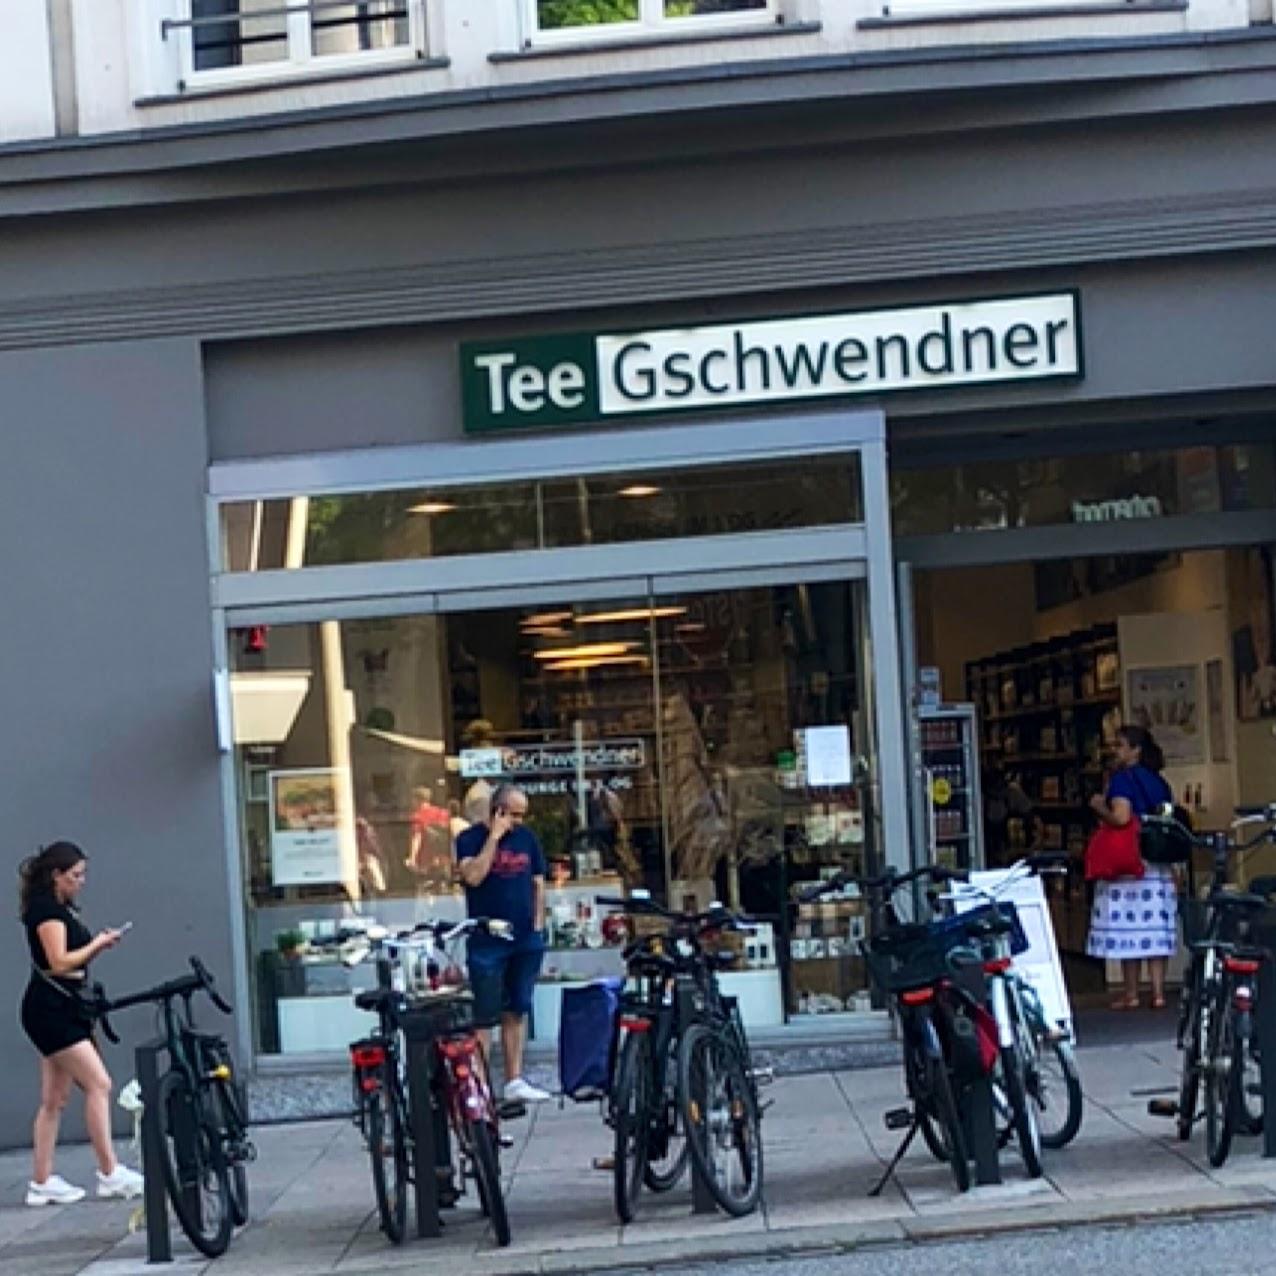 Restaurant "TeeGschwendner" in Hamburg